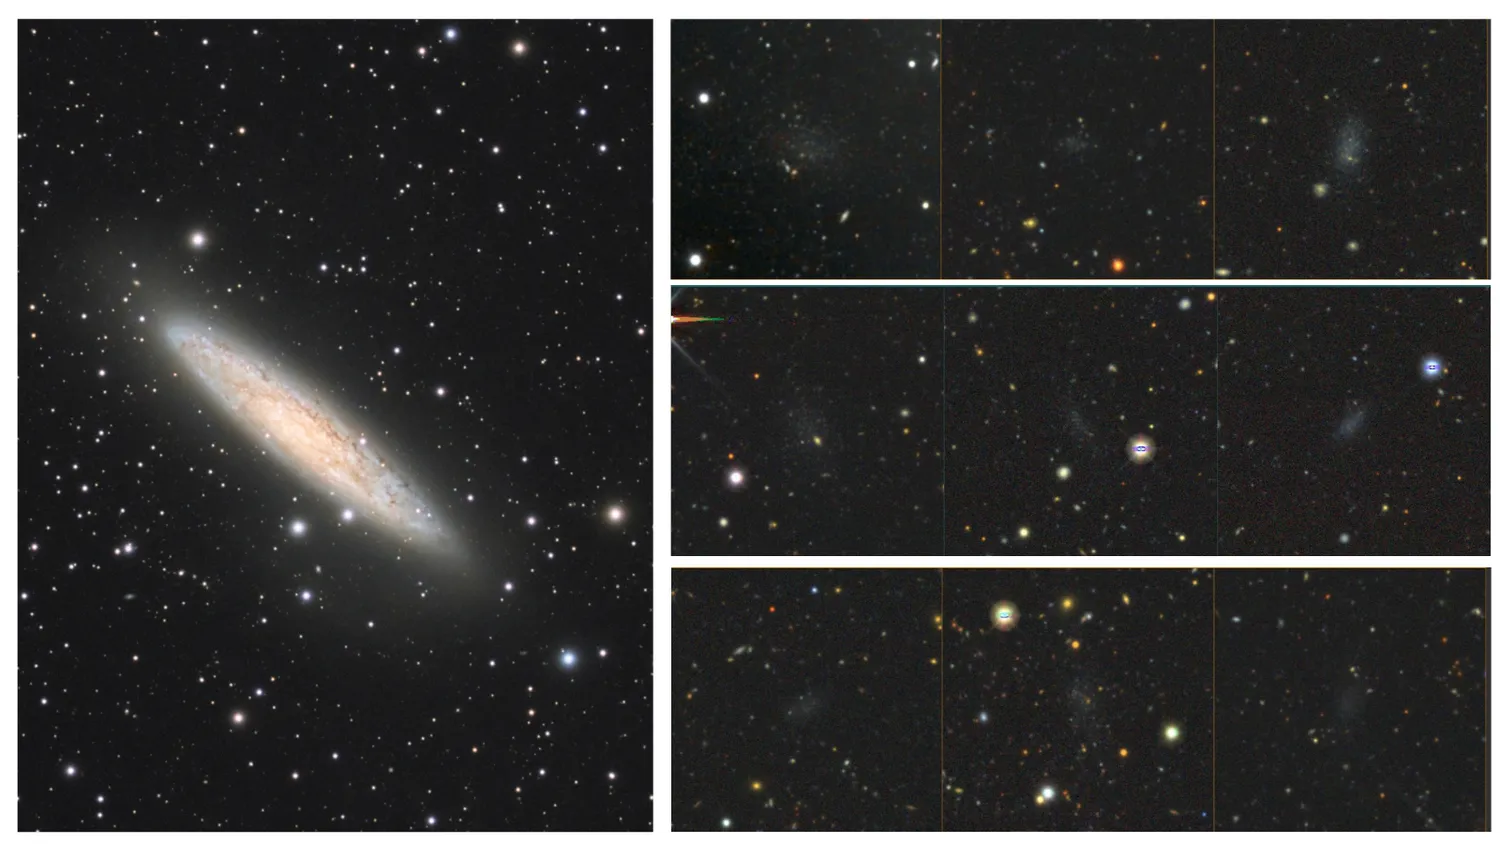 Mehr über den Artikel erfahren Amateurastronom findet 5 faszinierende neue Galaxien – und sie sind jetzt nach ihm benannt